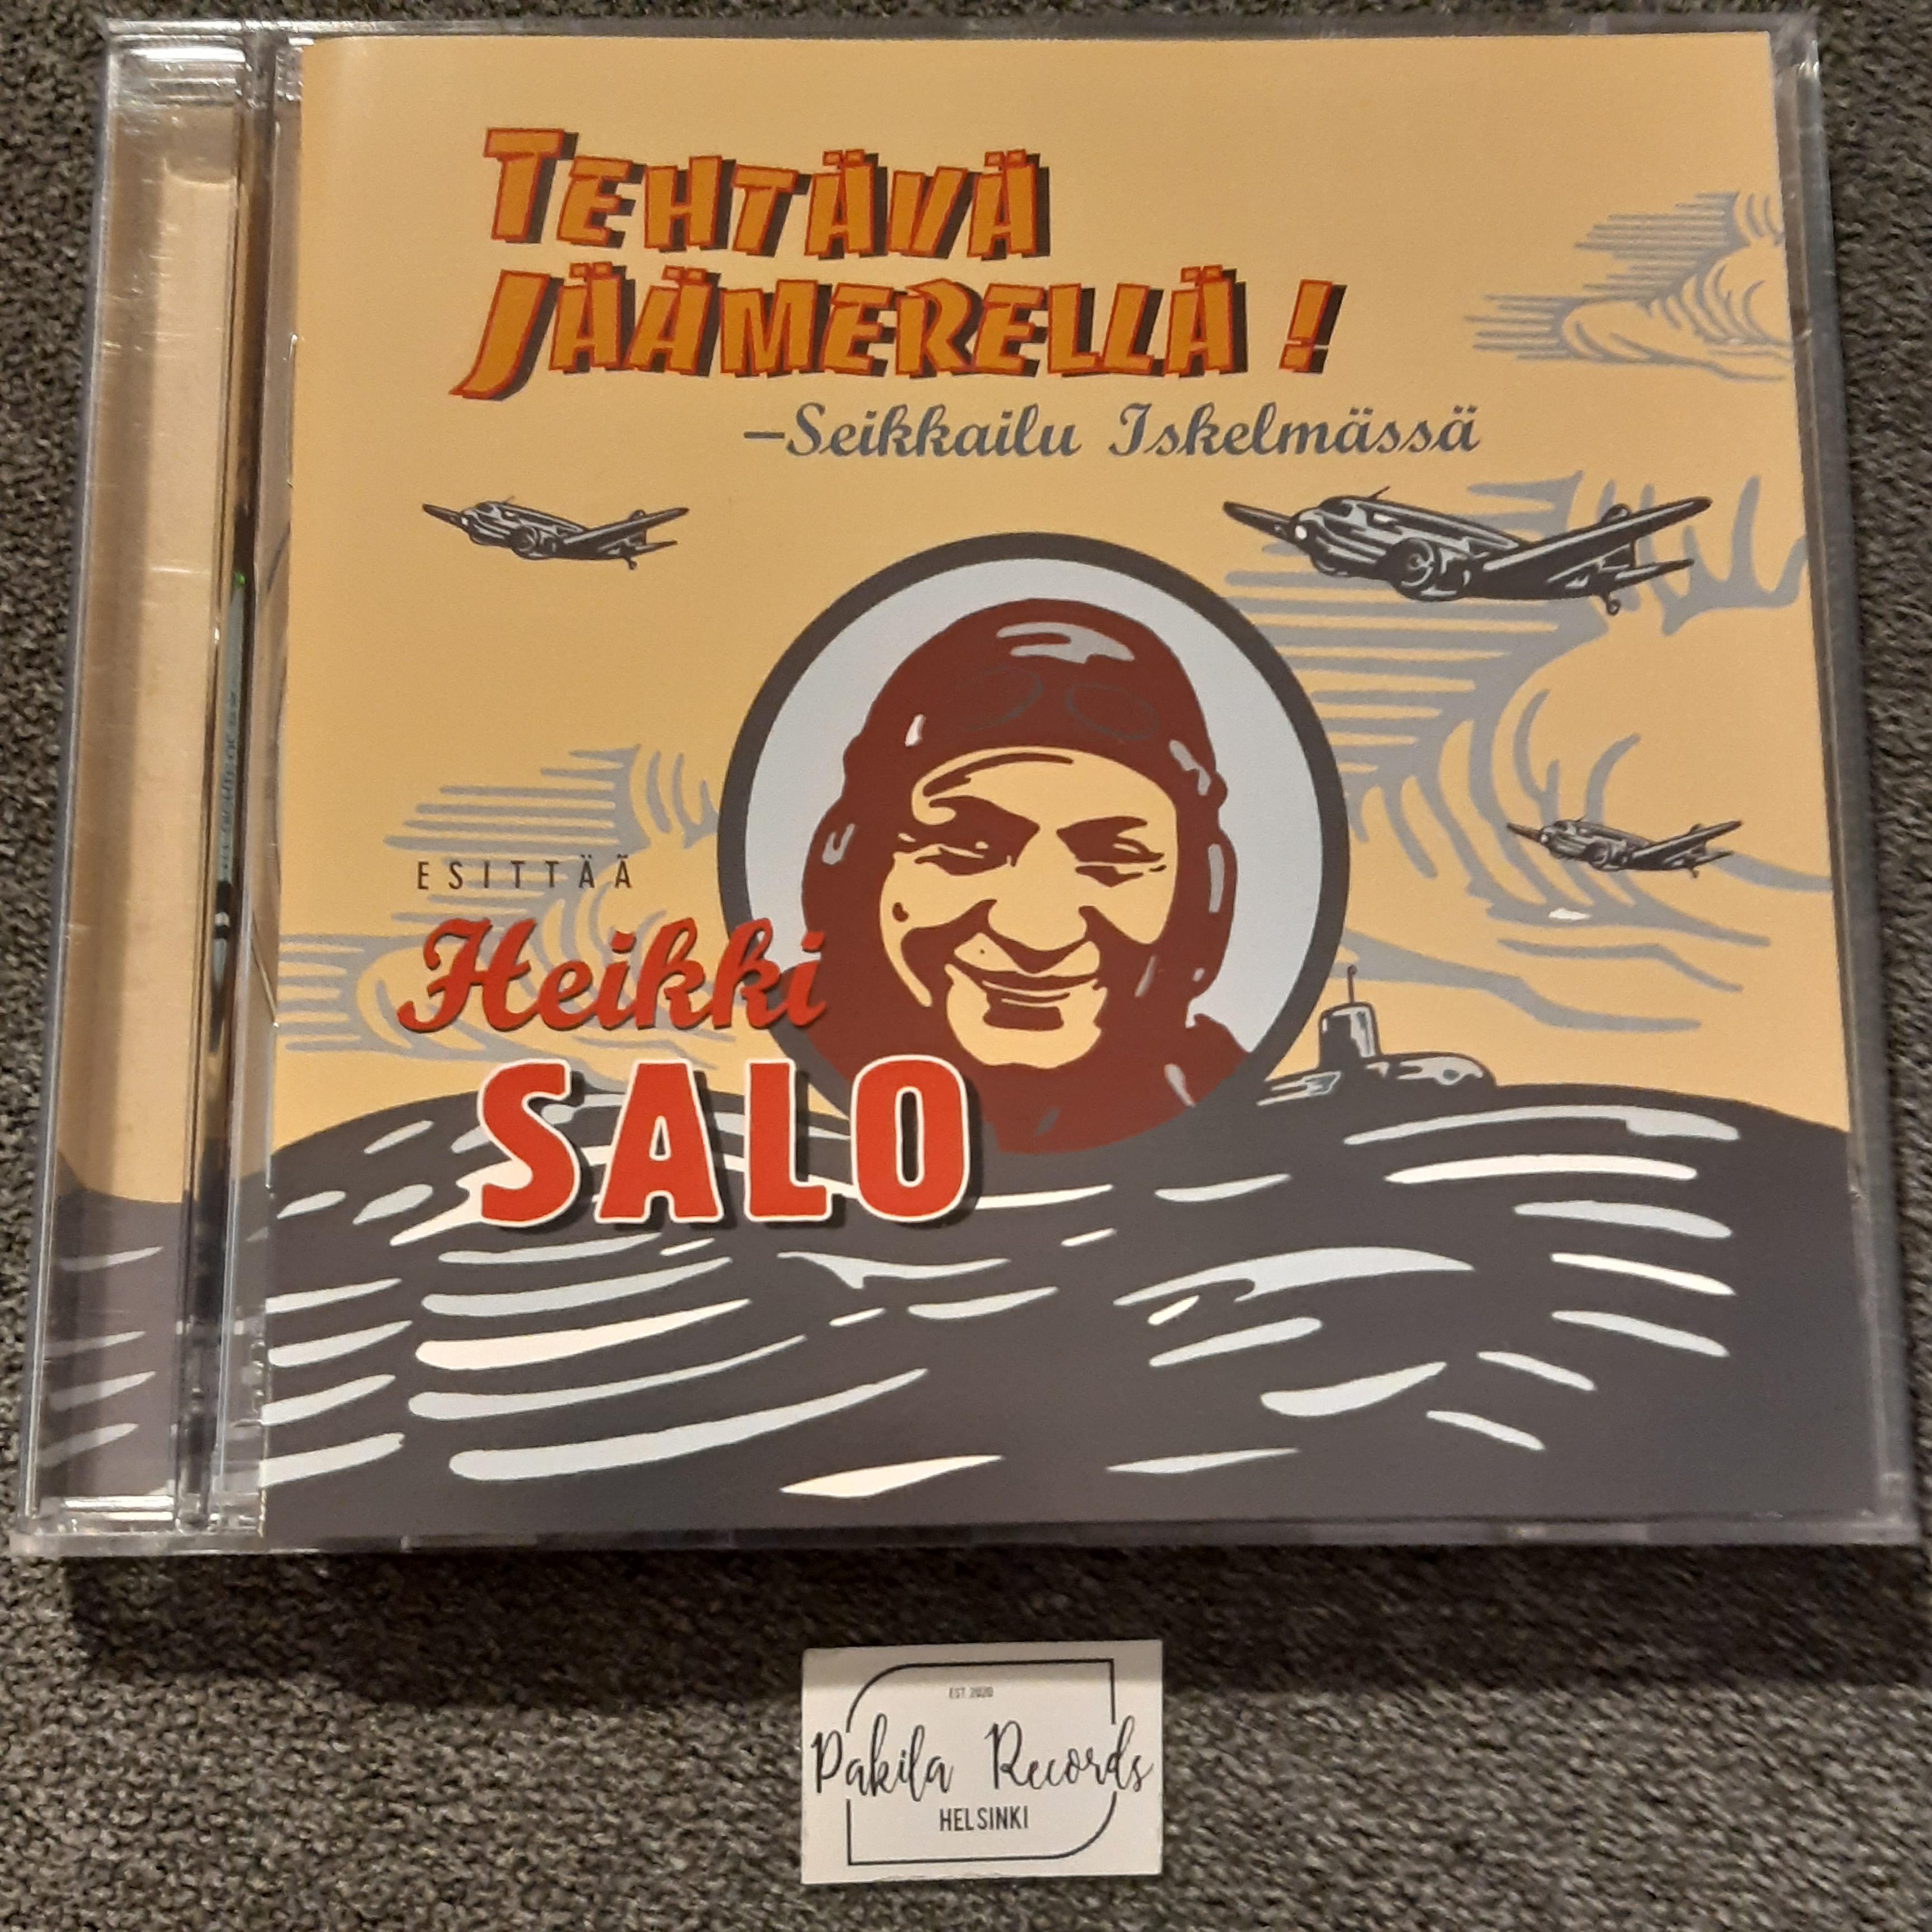 Heikki Salo - Tehtävä jäämerellä - CD (käytetty)